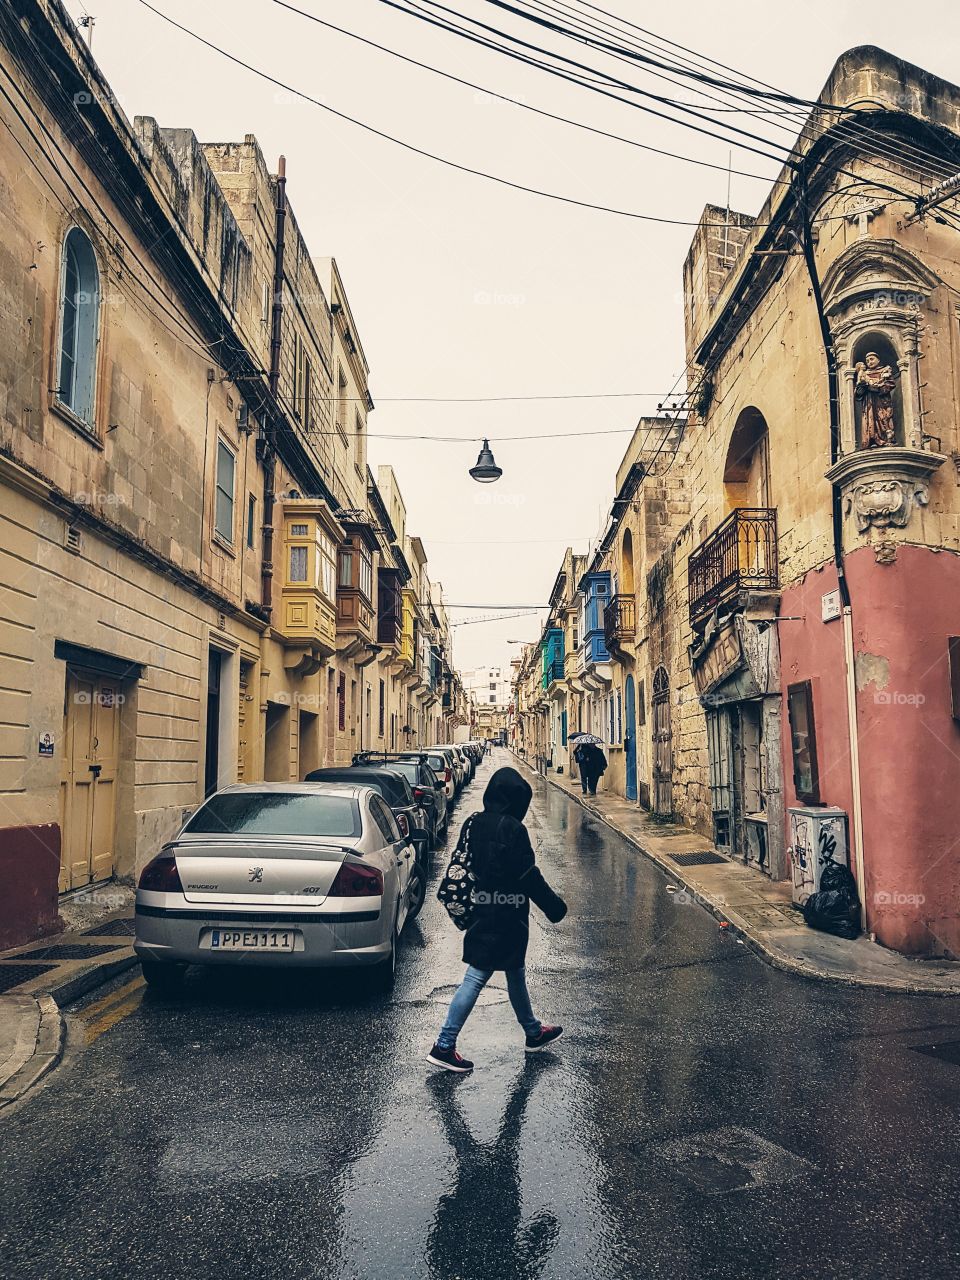 A Street in Malta